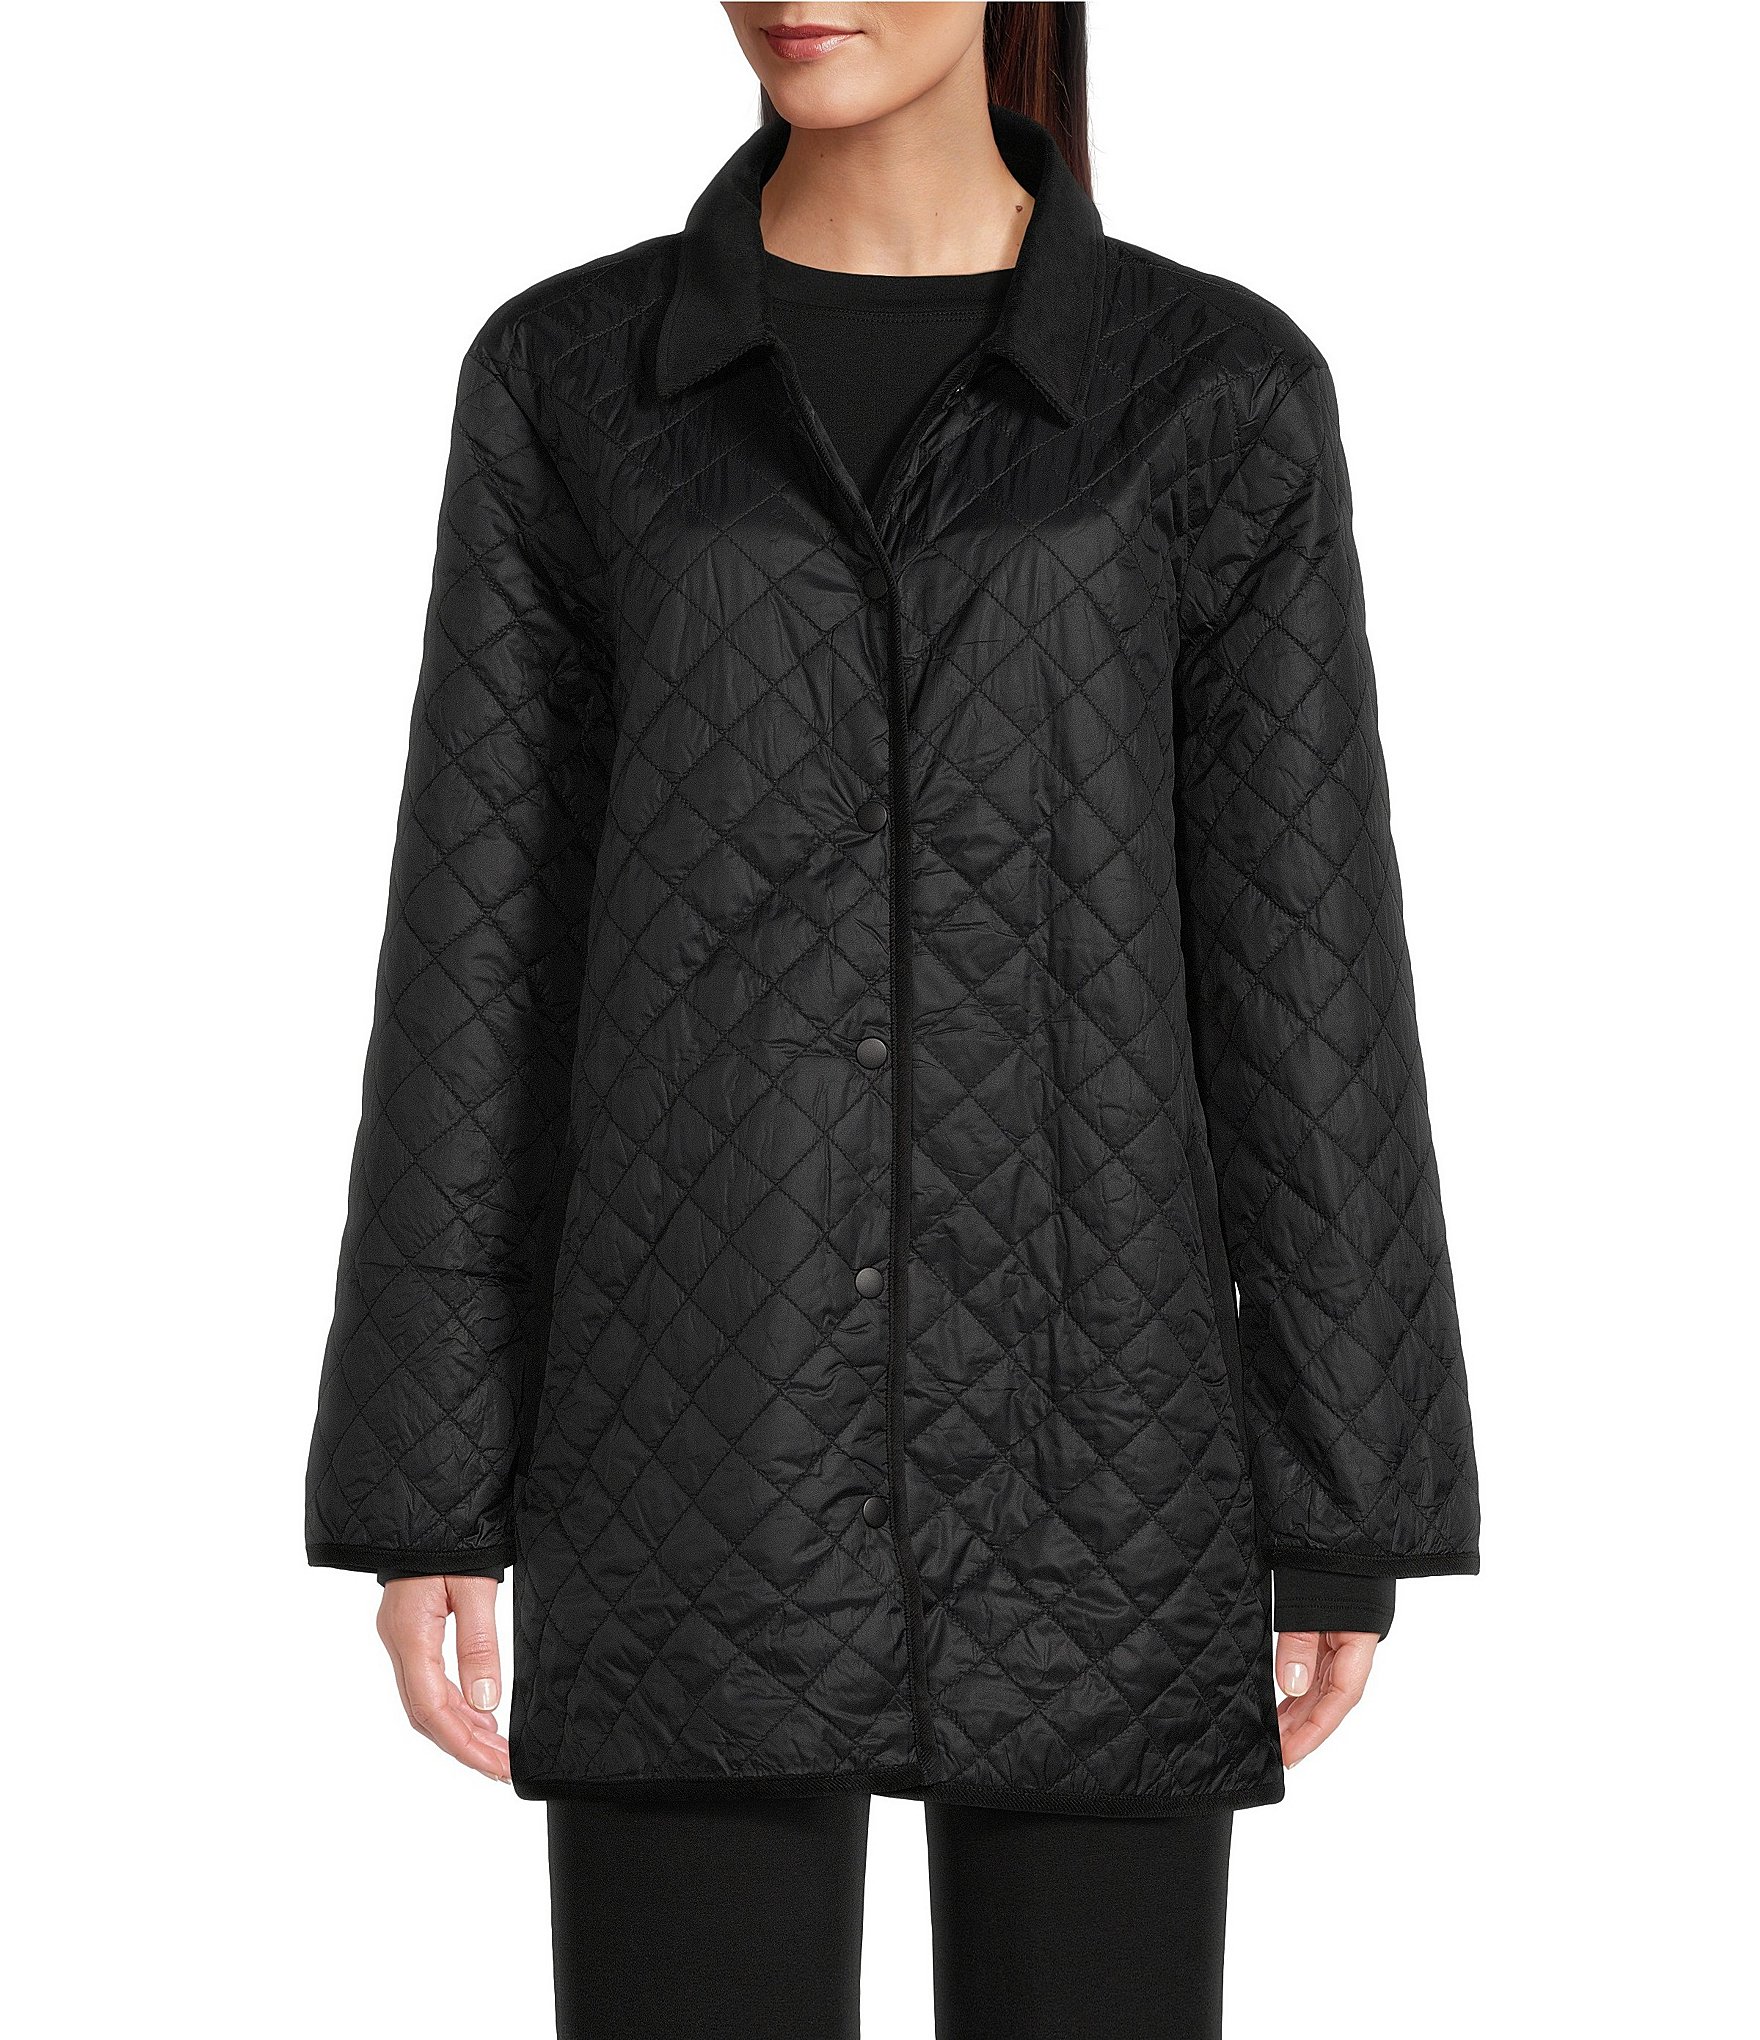 Women's Winter & Weather-Resistant Coats